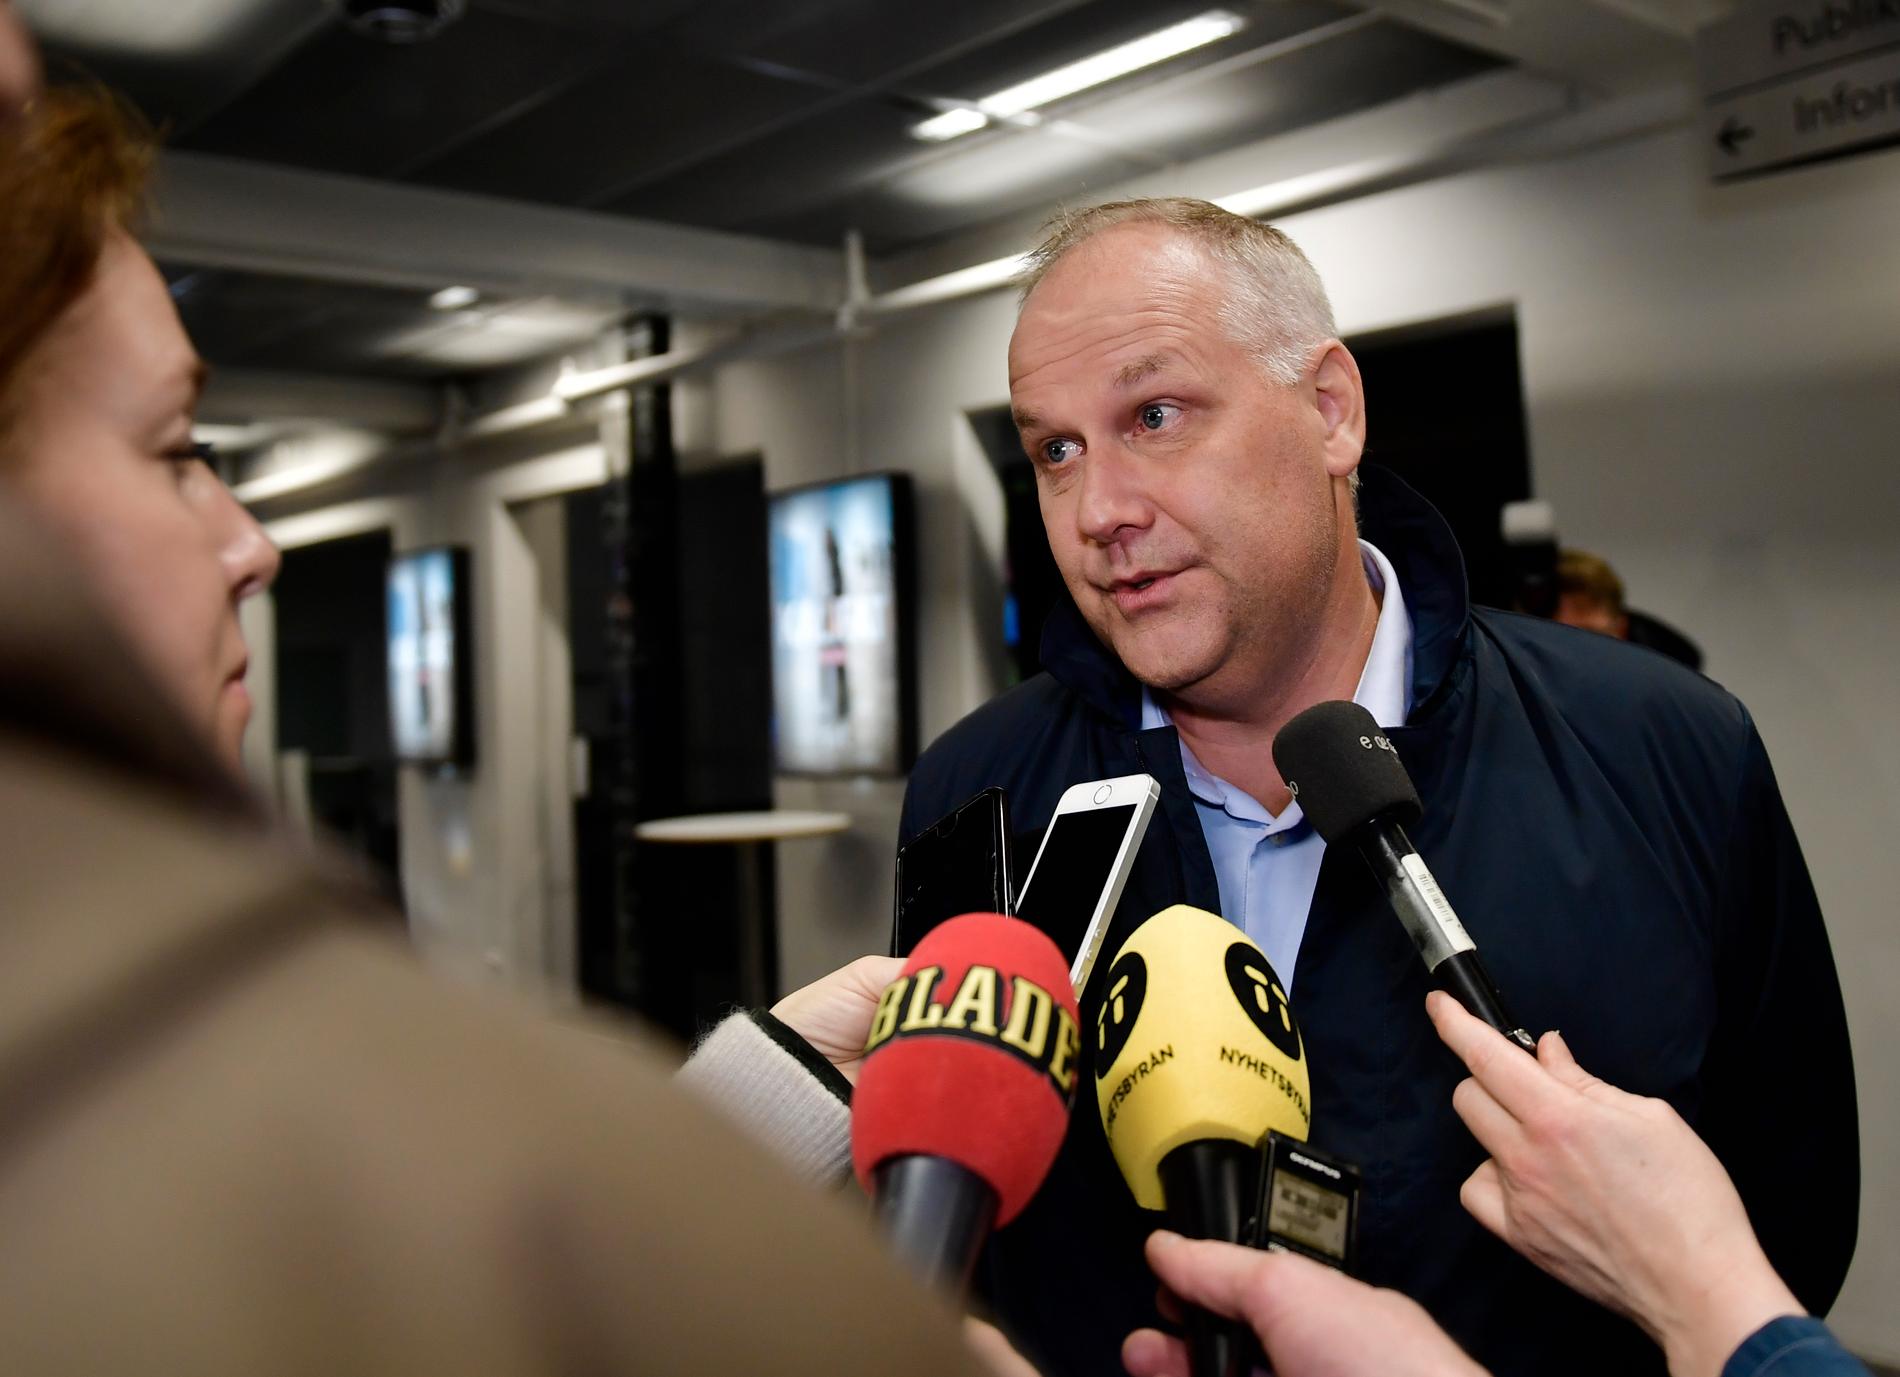 Vänsterpartiets ledare Jonas Sjöstedt, som lämnar posten i maj, kan glädjas åt högsta väljarstödet sedan 2002 i Sifos nya mätning.